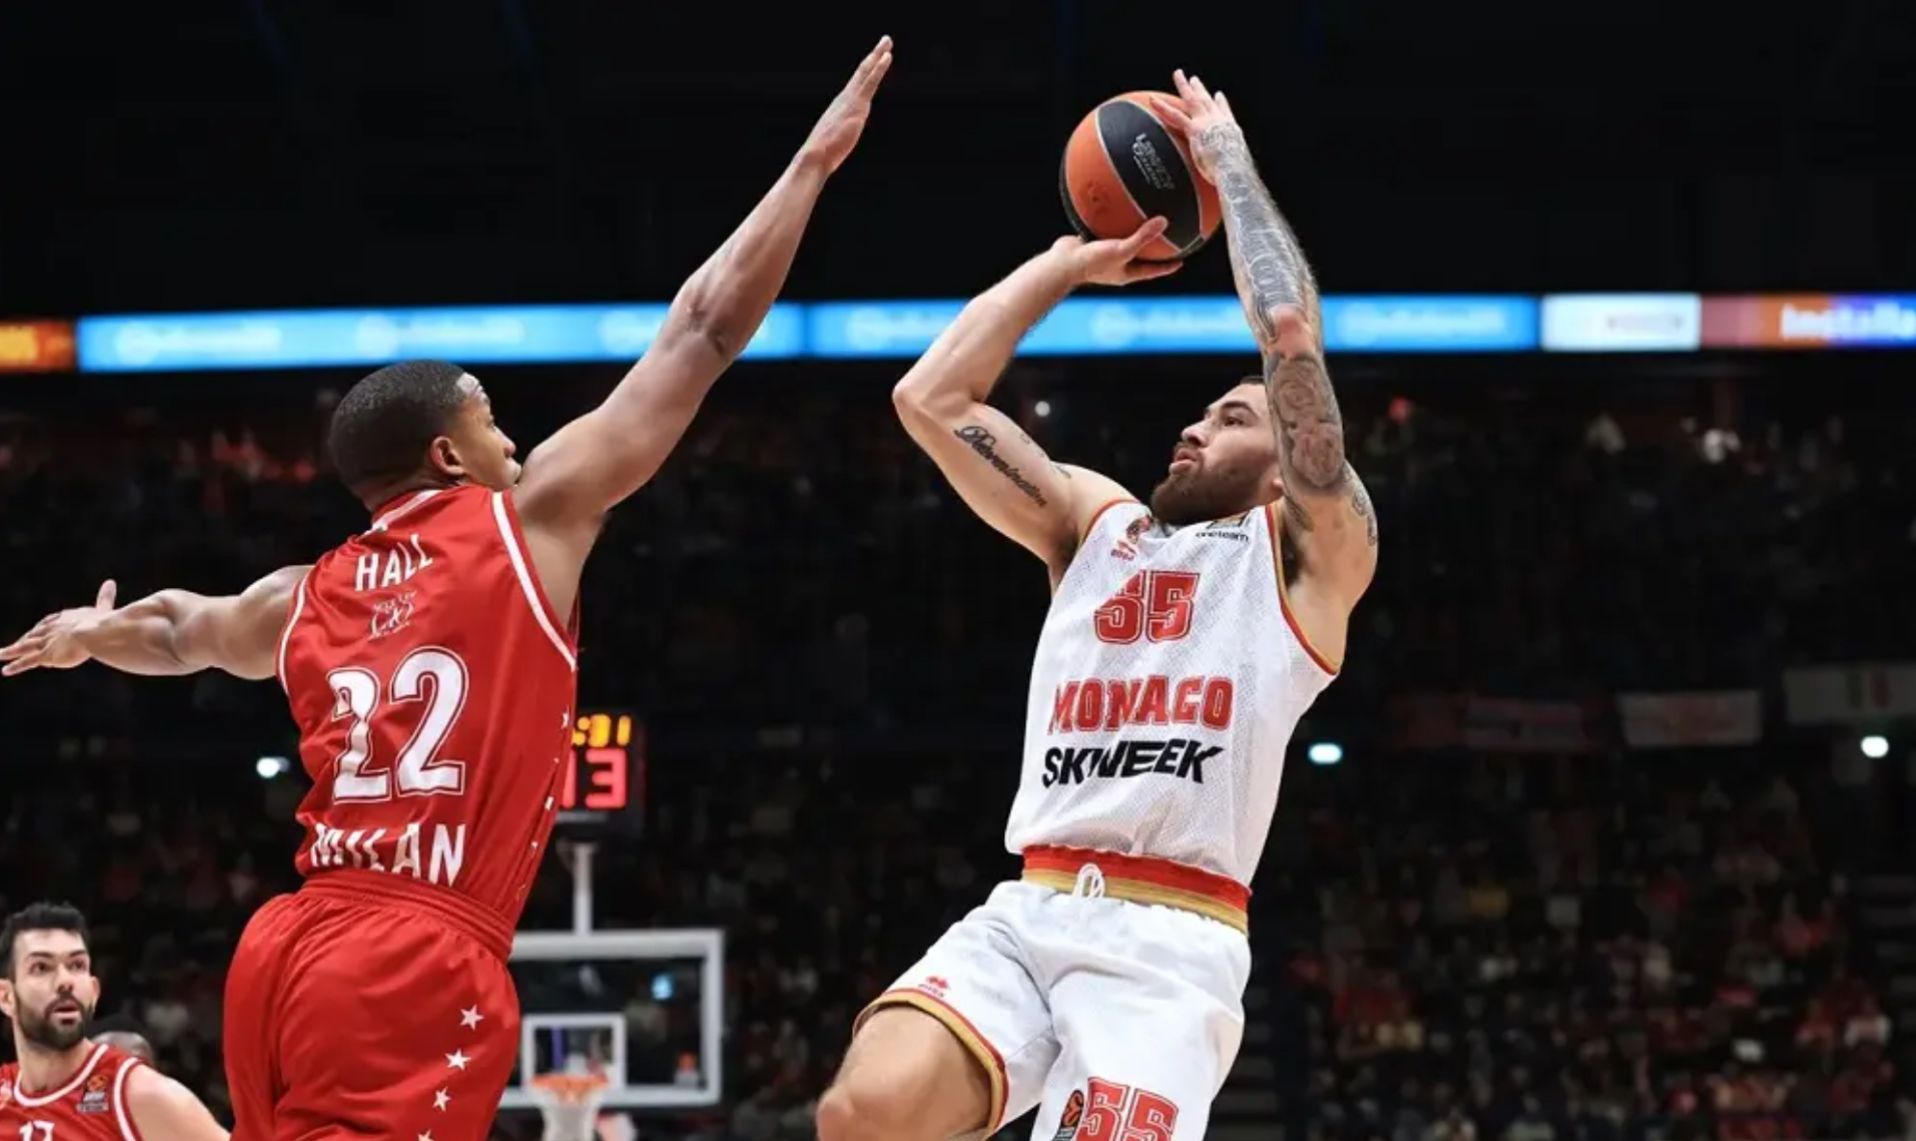 Crvena zvezda vs Monaco Basket scores & predictions